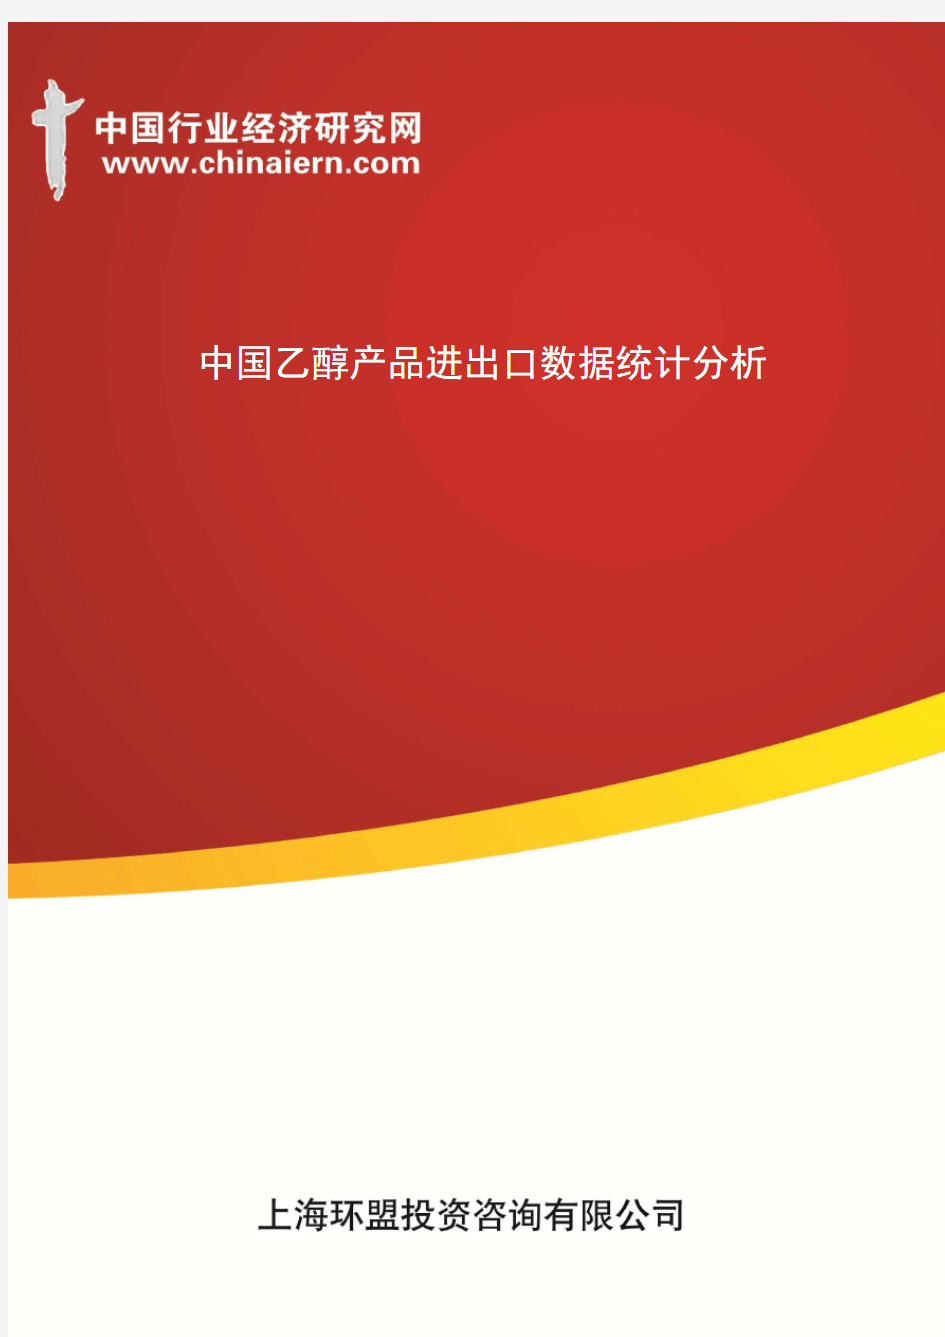 中国乙醇产品进出口数据统计分析(上海环盟)